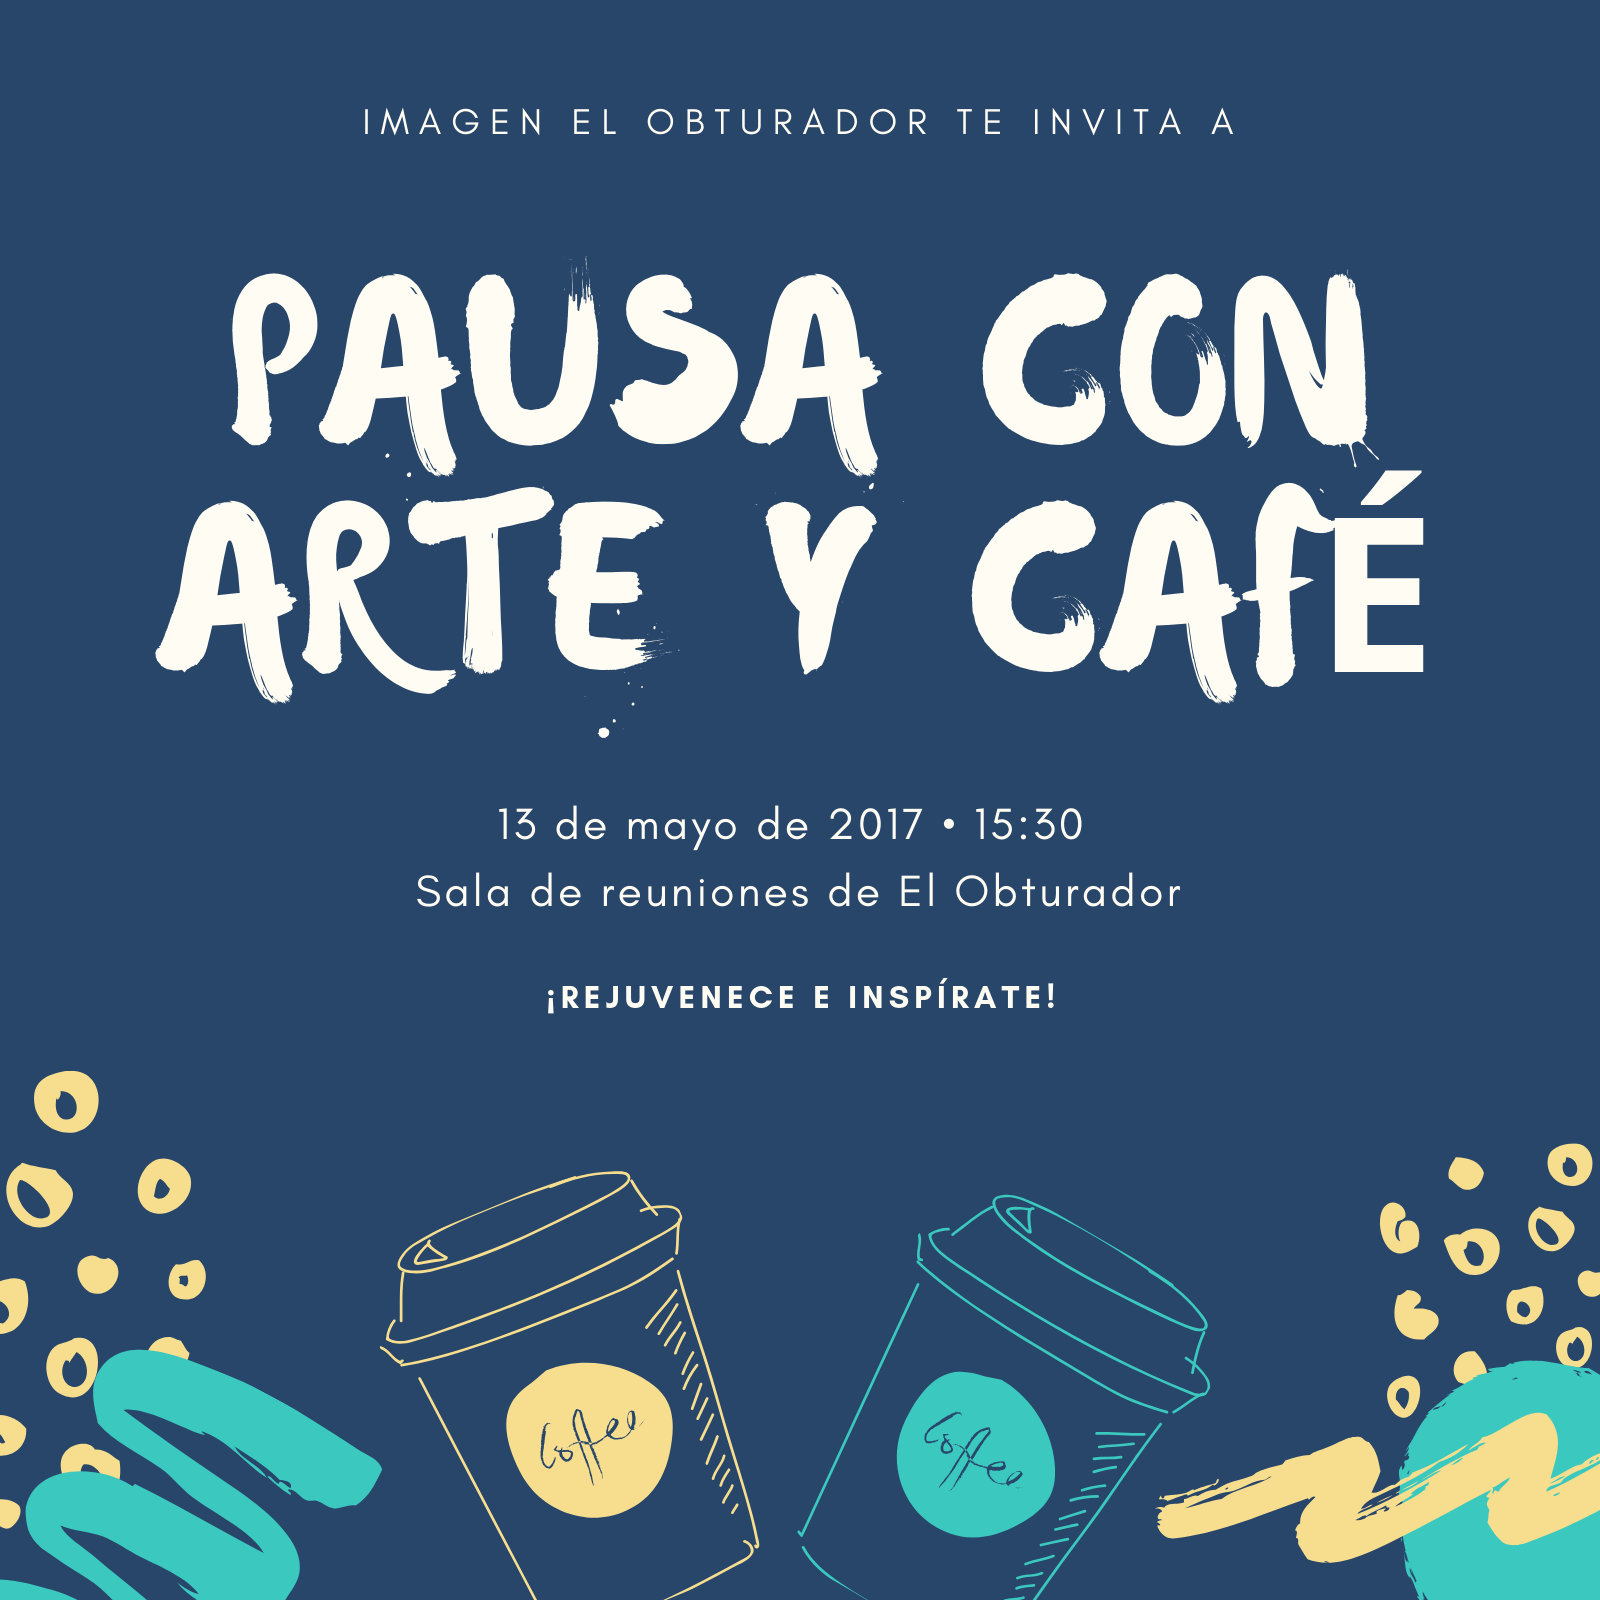 Invitaciones para Eventos en Guatemala